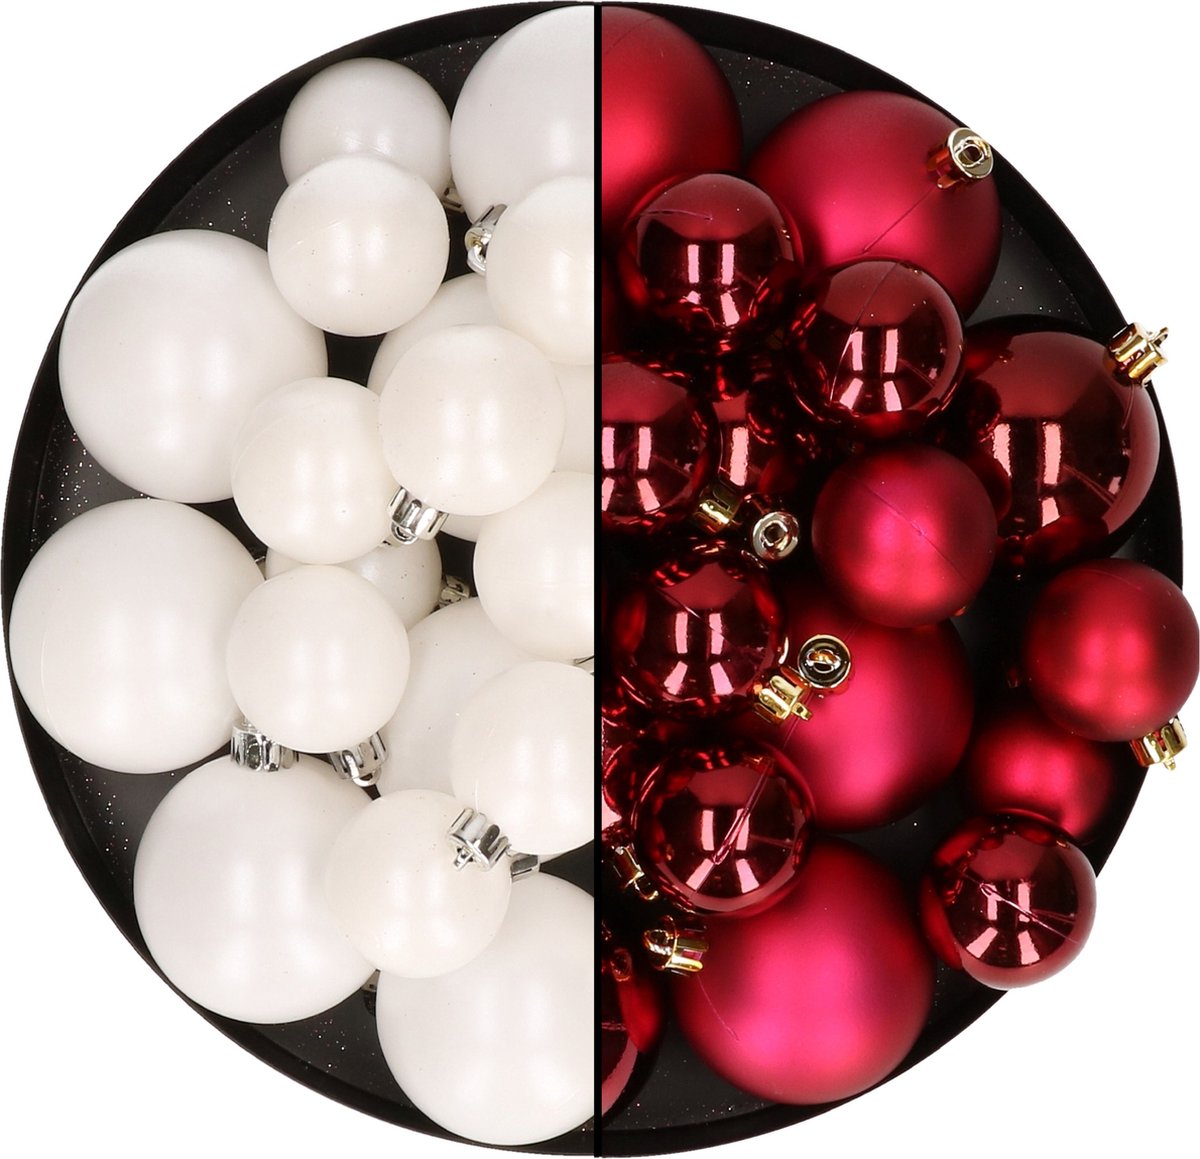 Kerstversiering kunststof kerstballen kleuren mix donkerrood/winter wit 4-6-8 cm pakket van 68x stuks